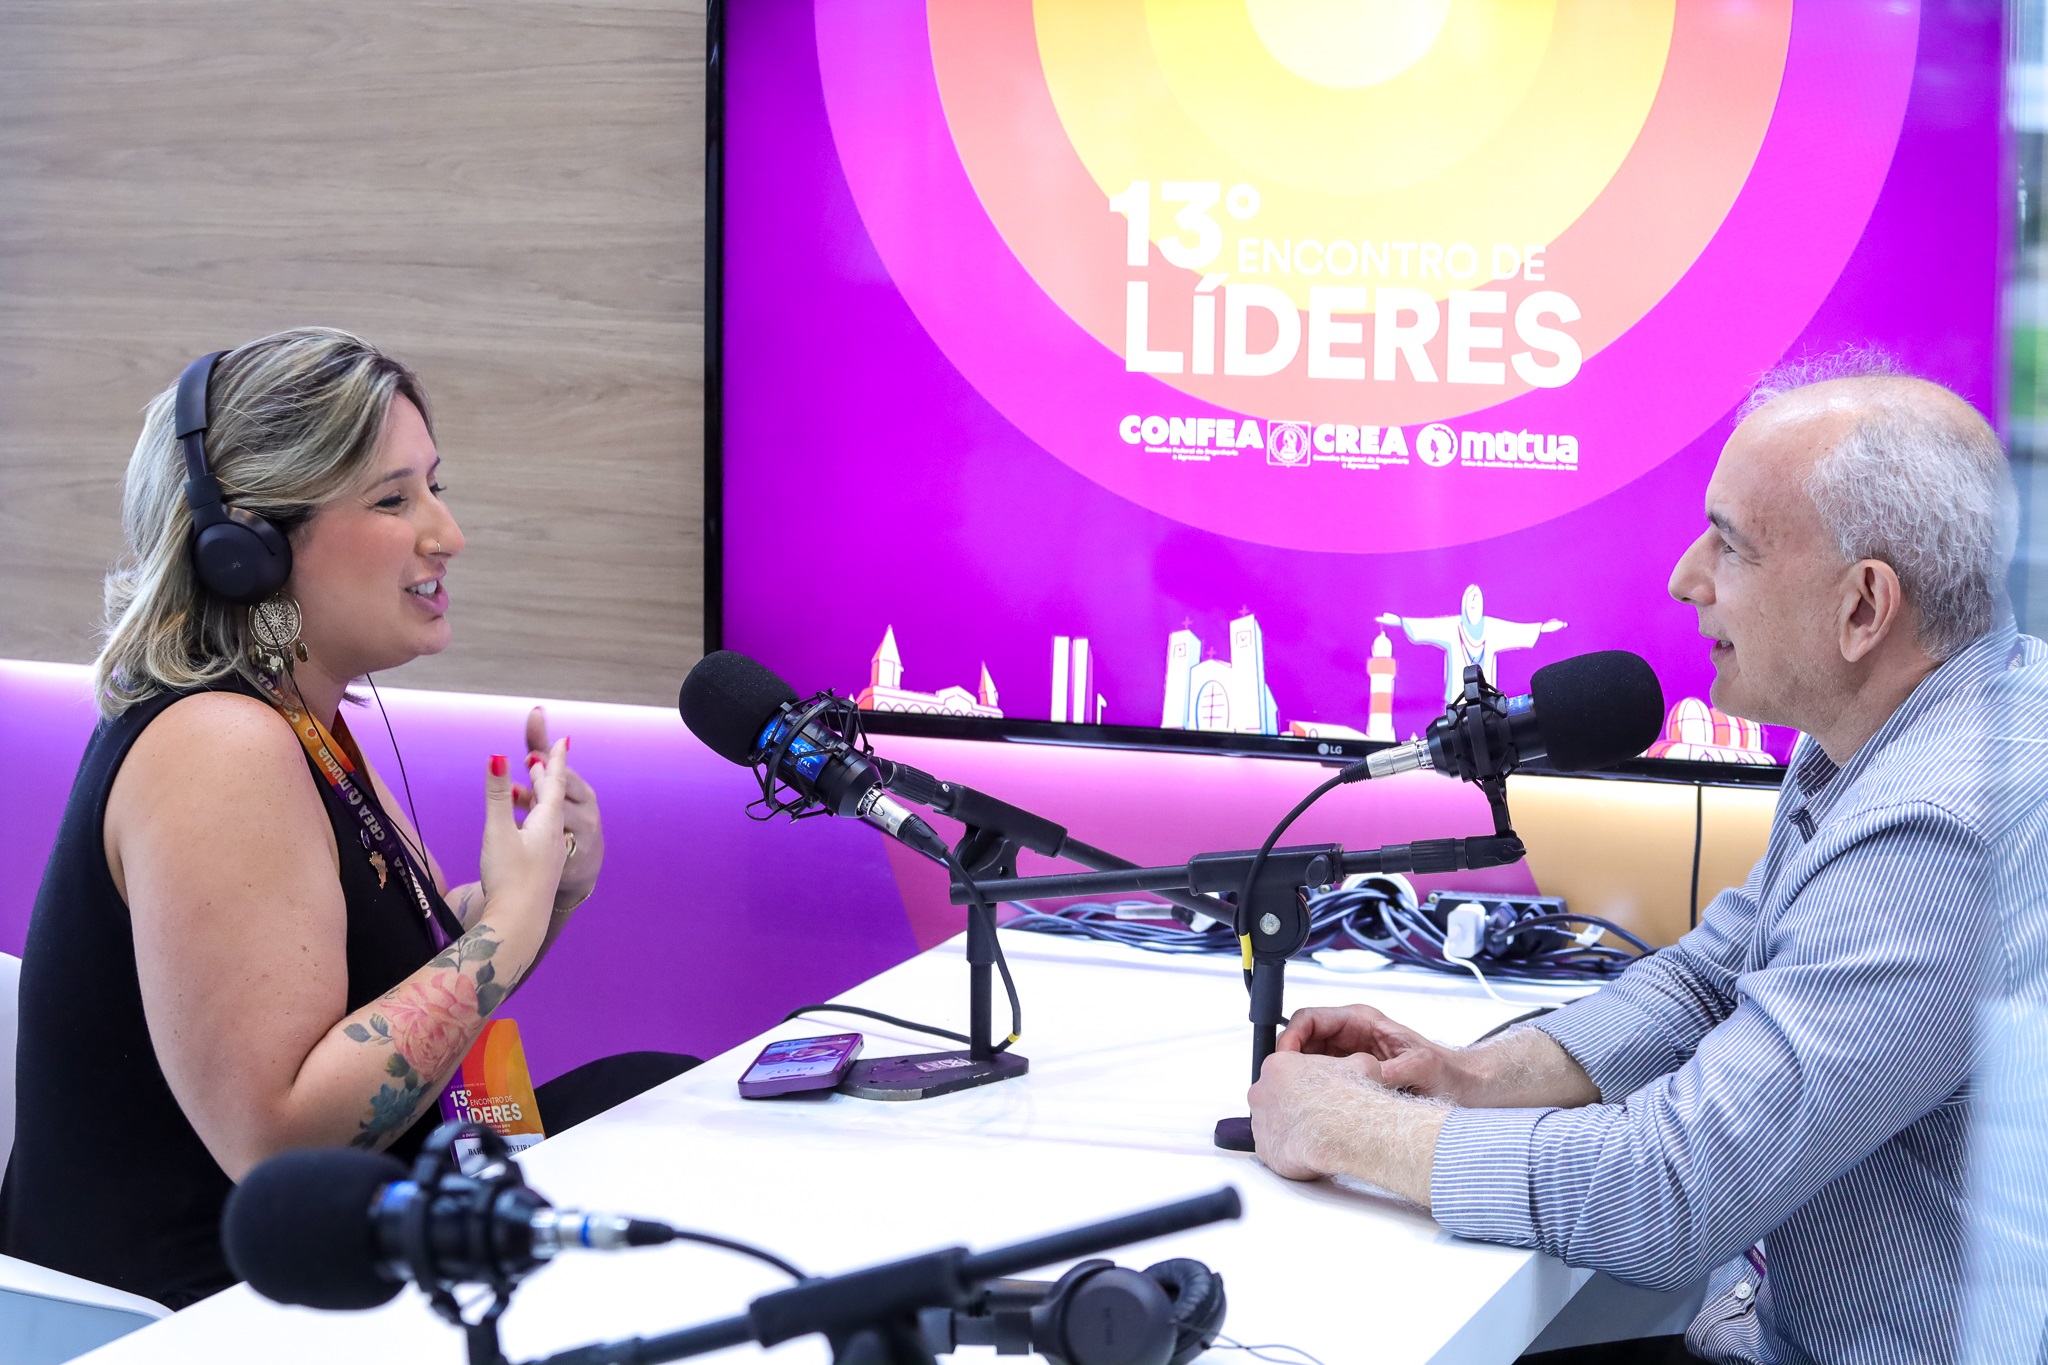 Jornalista Bárbara Oliveira em PodCast com o influenciador